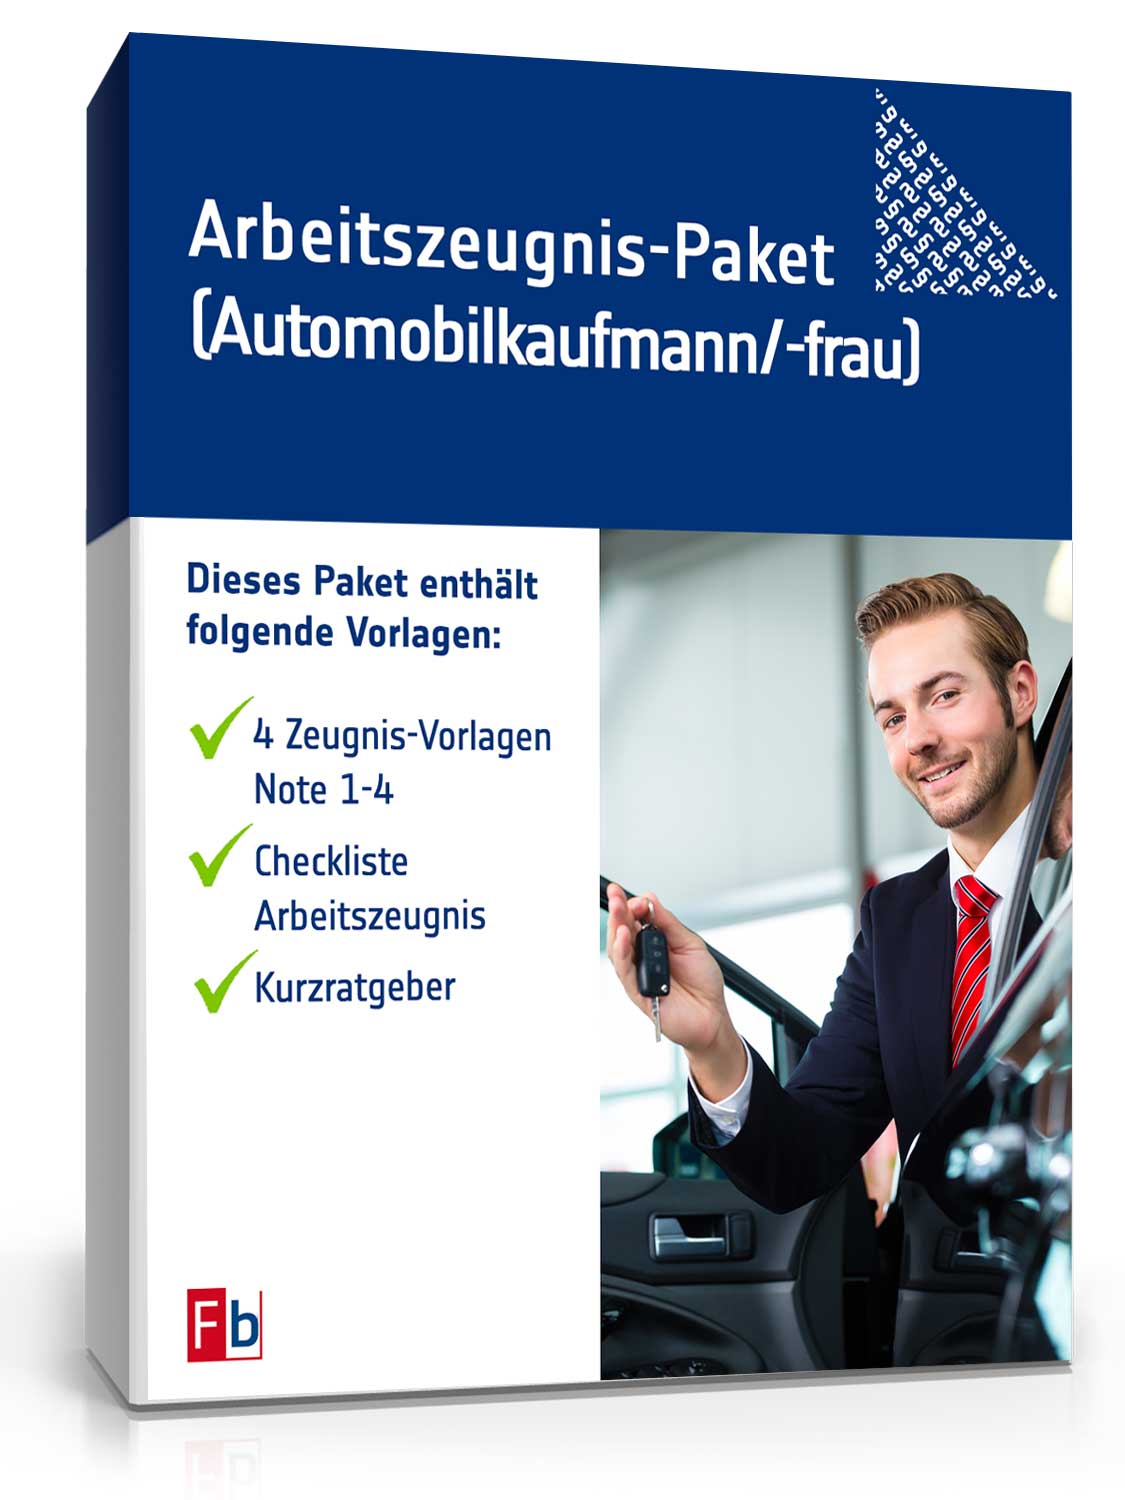 Arbeitszeugnis-Paket Automobilkaufmann/-frau